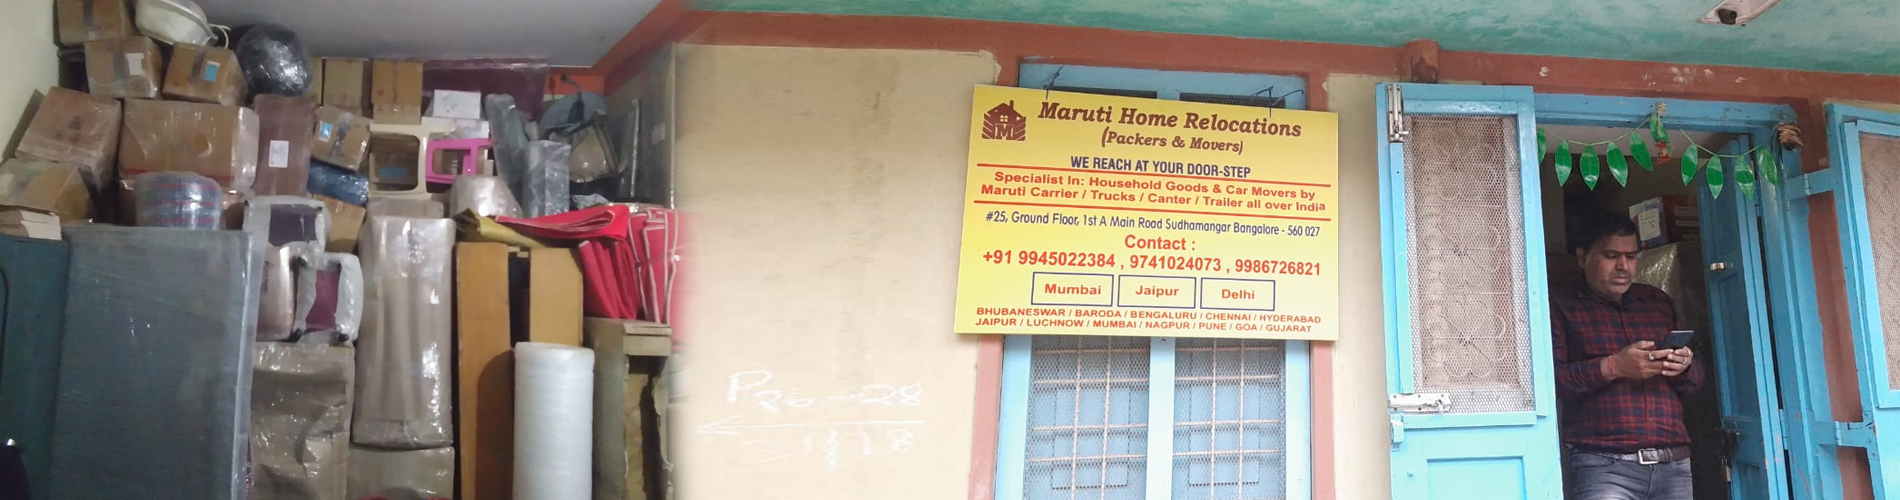 Maruti Home Relocation